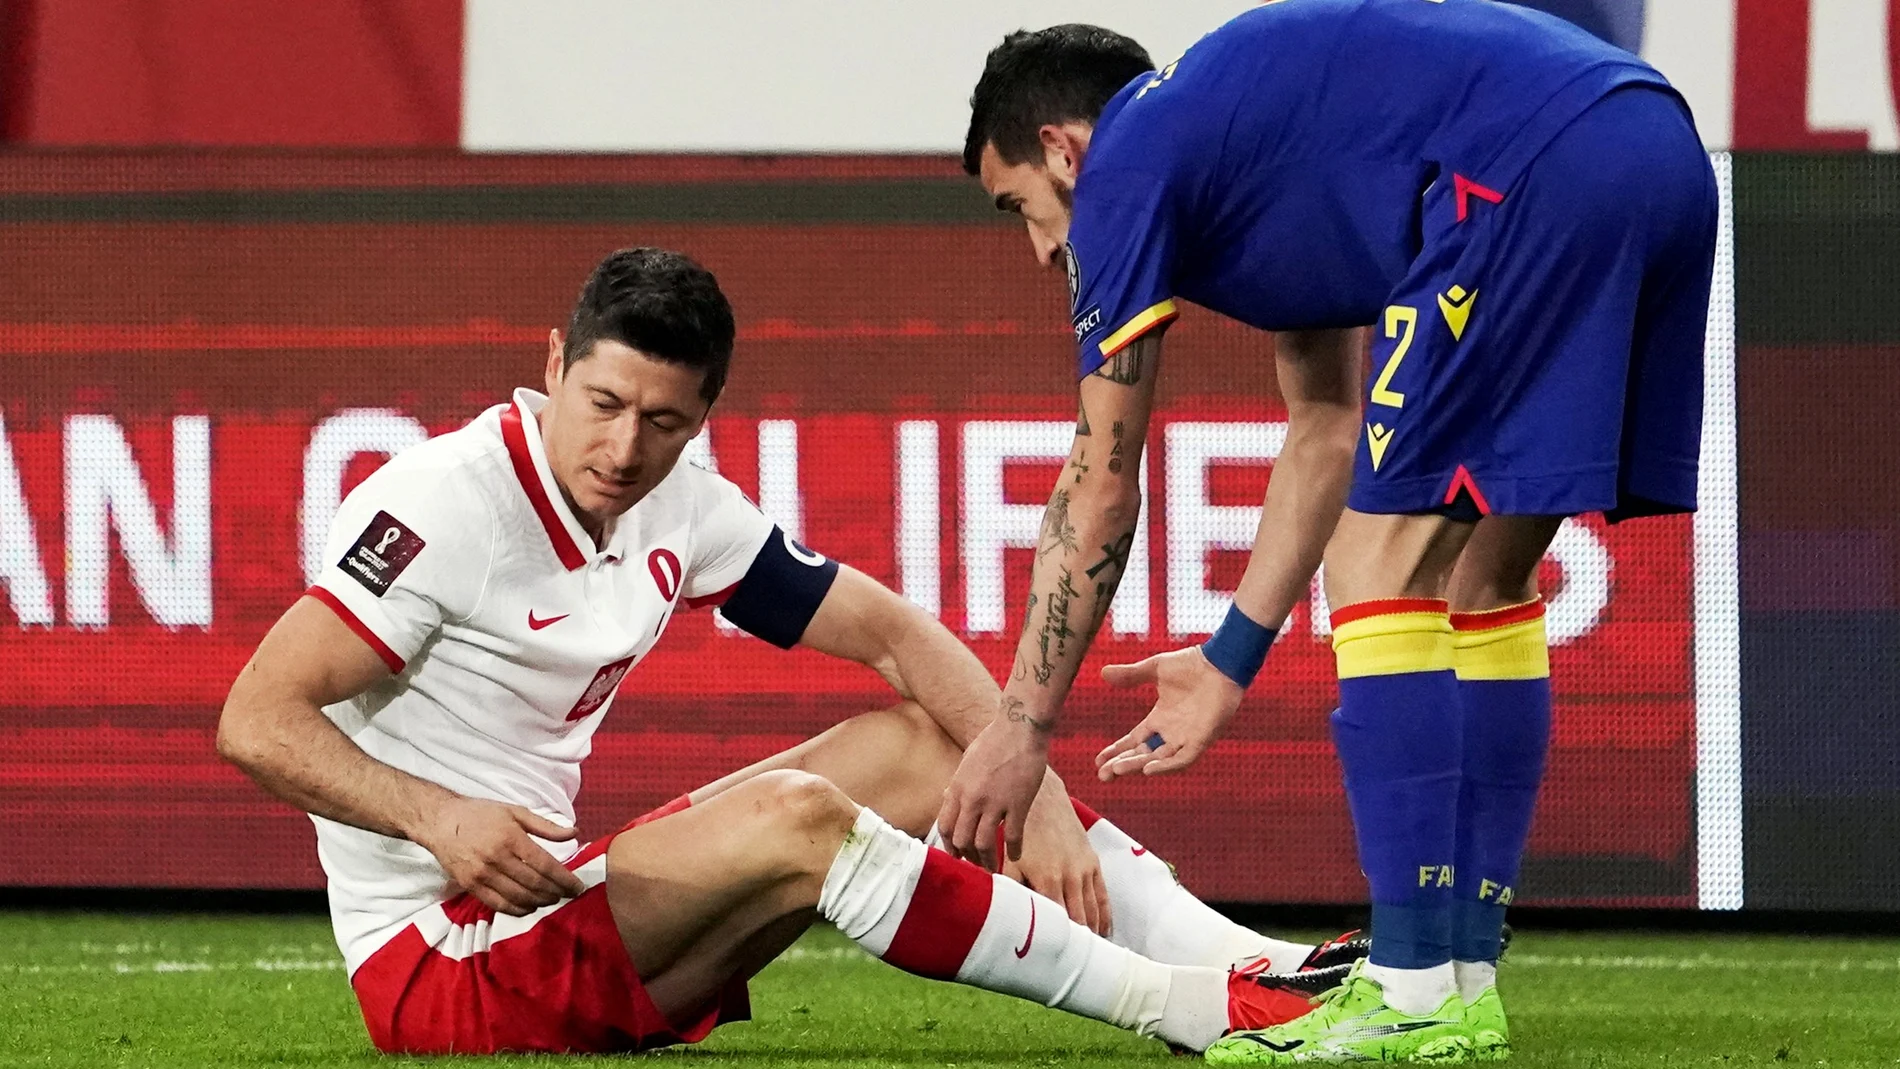 Lewamdowski, en el suelo, atendido por el jugador andorrano Cristian Martínez